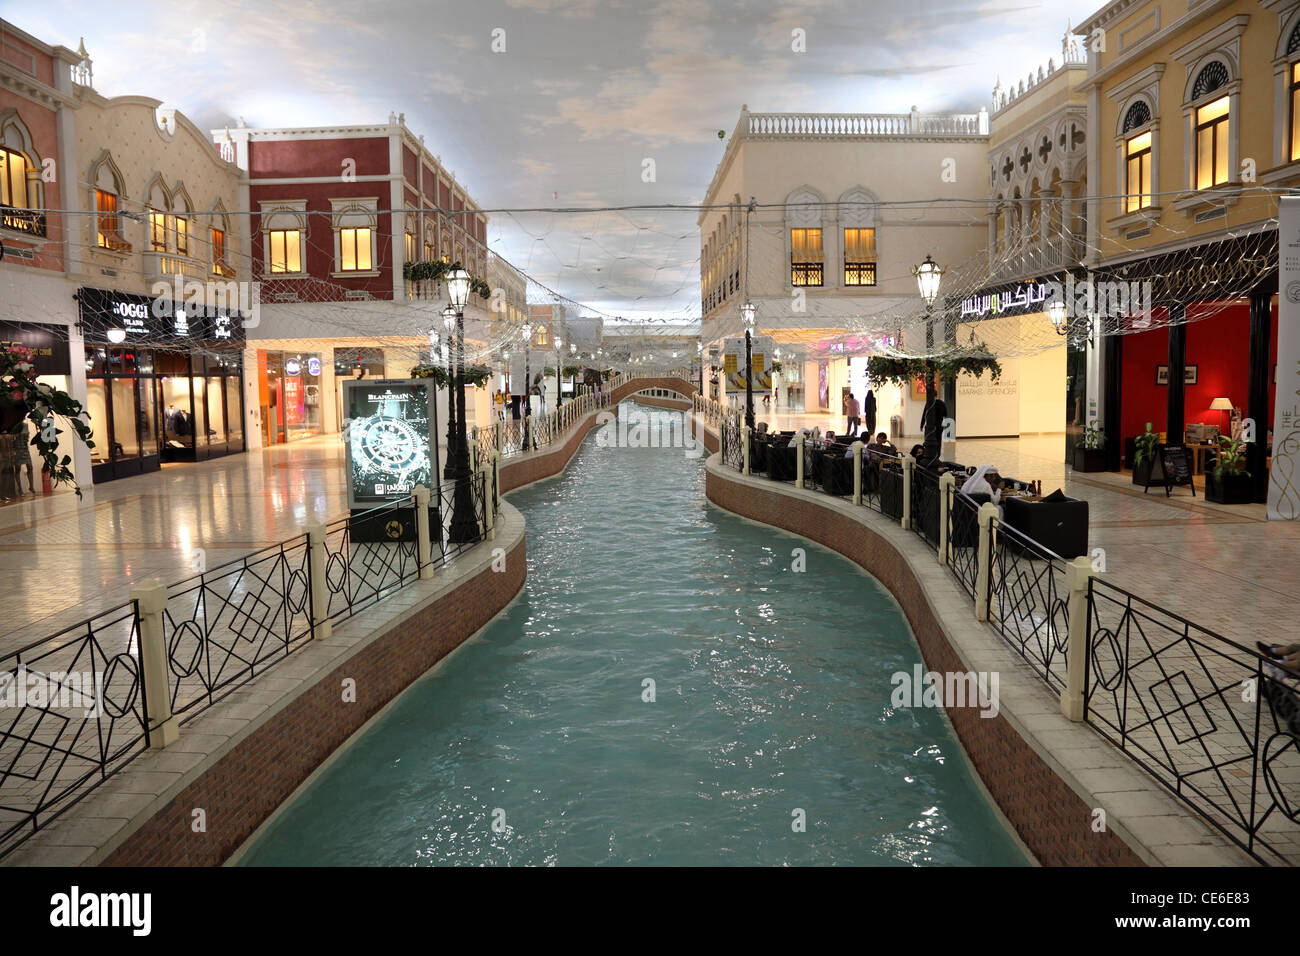 À l'intérieur de l'Villaggio Mall Shopping Center à Doha, Qatar Banque D'Images